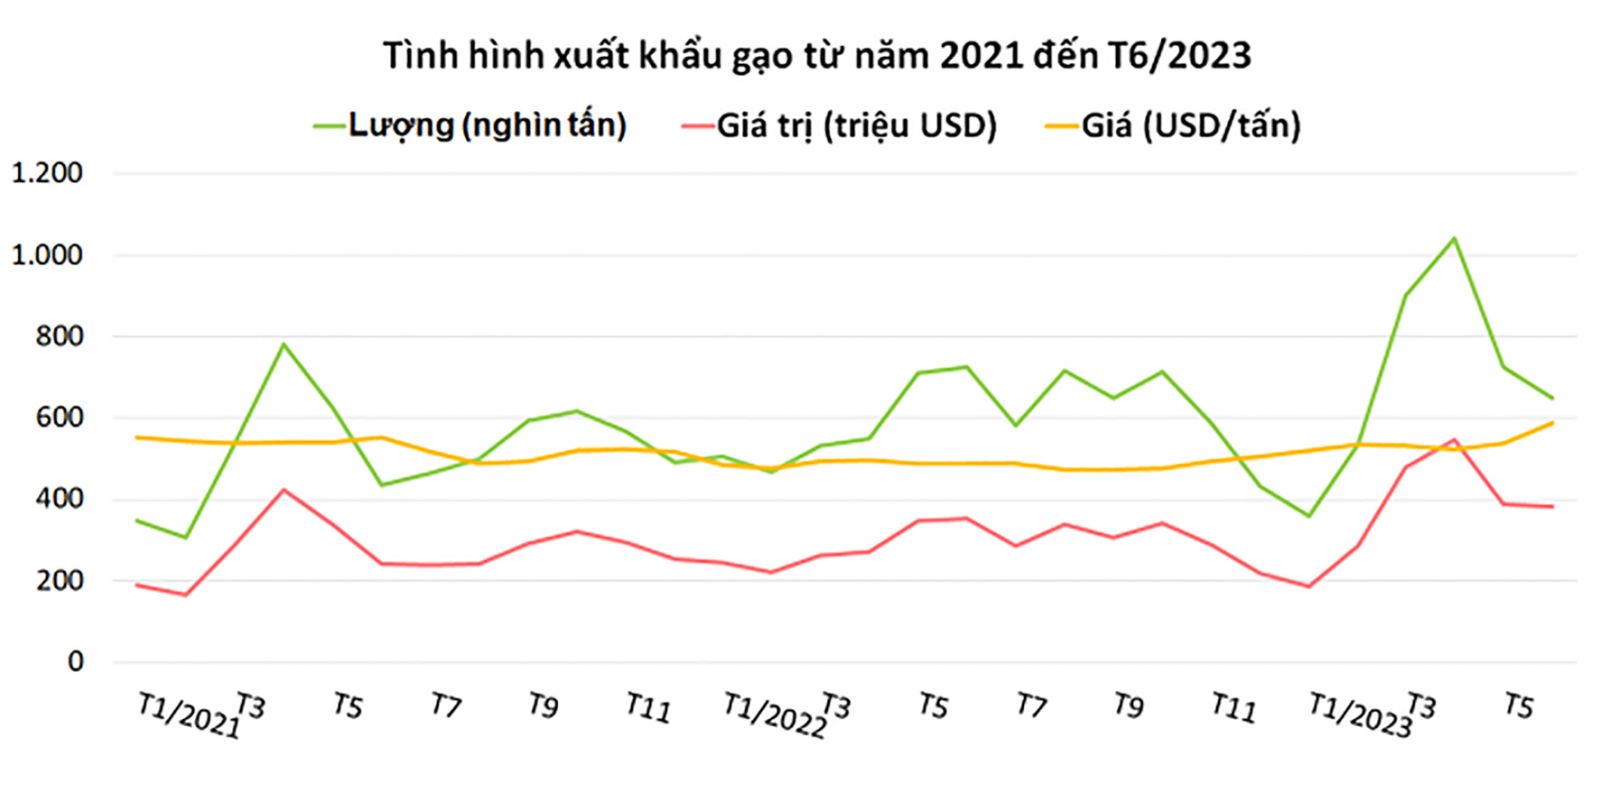  Tình hình xuất khẩu gạo của Việt Nam có nhiều khởi sắc trong 6 tháng đầu năm 2023.